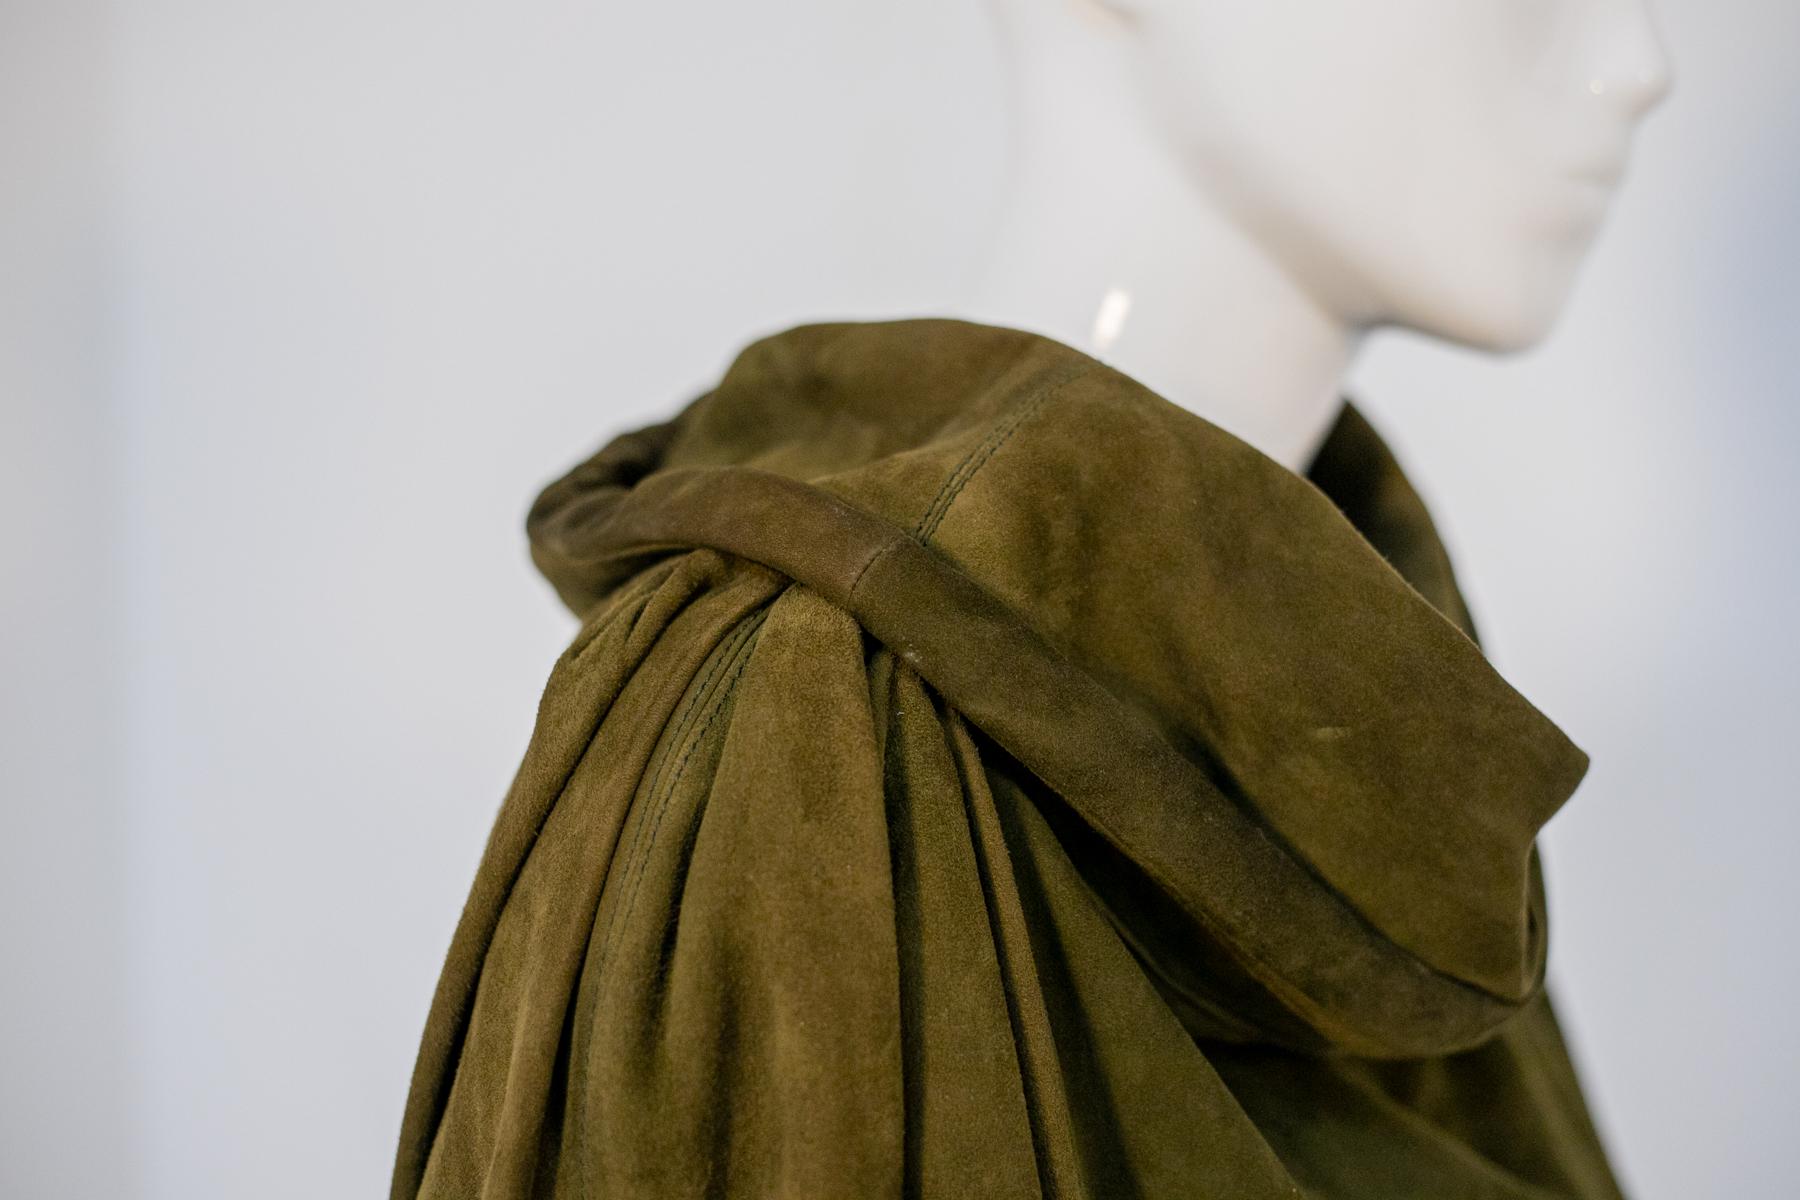 Besonderer Vintage-Mantel aus den 1990er Jahren, hergestellt in Italien.
Der Mantel ist ganz aus sehr schönem und elegantem olivgrünem Wildleder, mit sehr weichen langen Ärmeln.
Der Kragen ist das Highlight des Mantels: Er hat nämlich nicht den